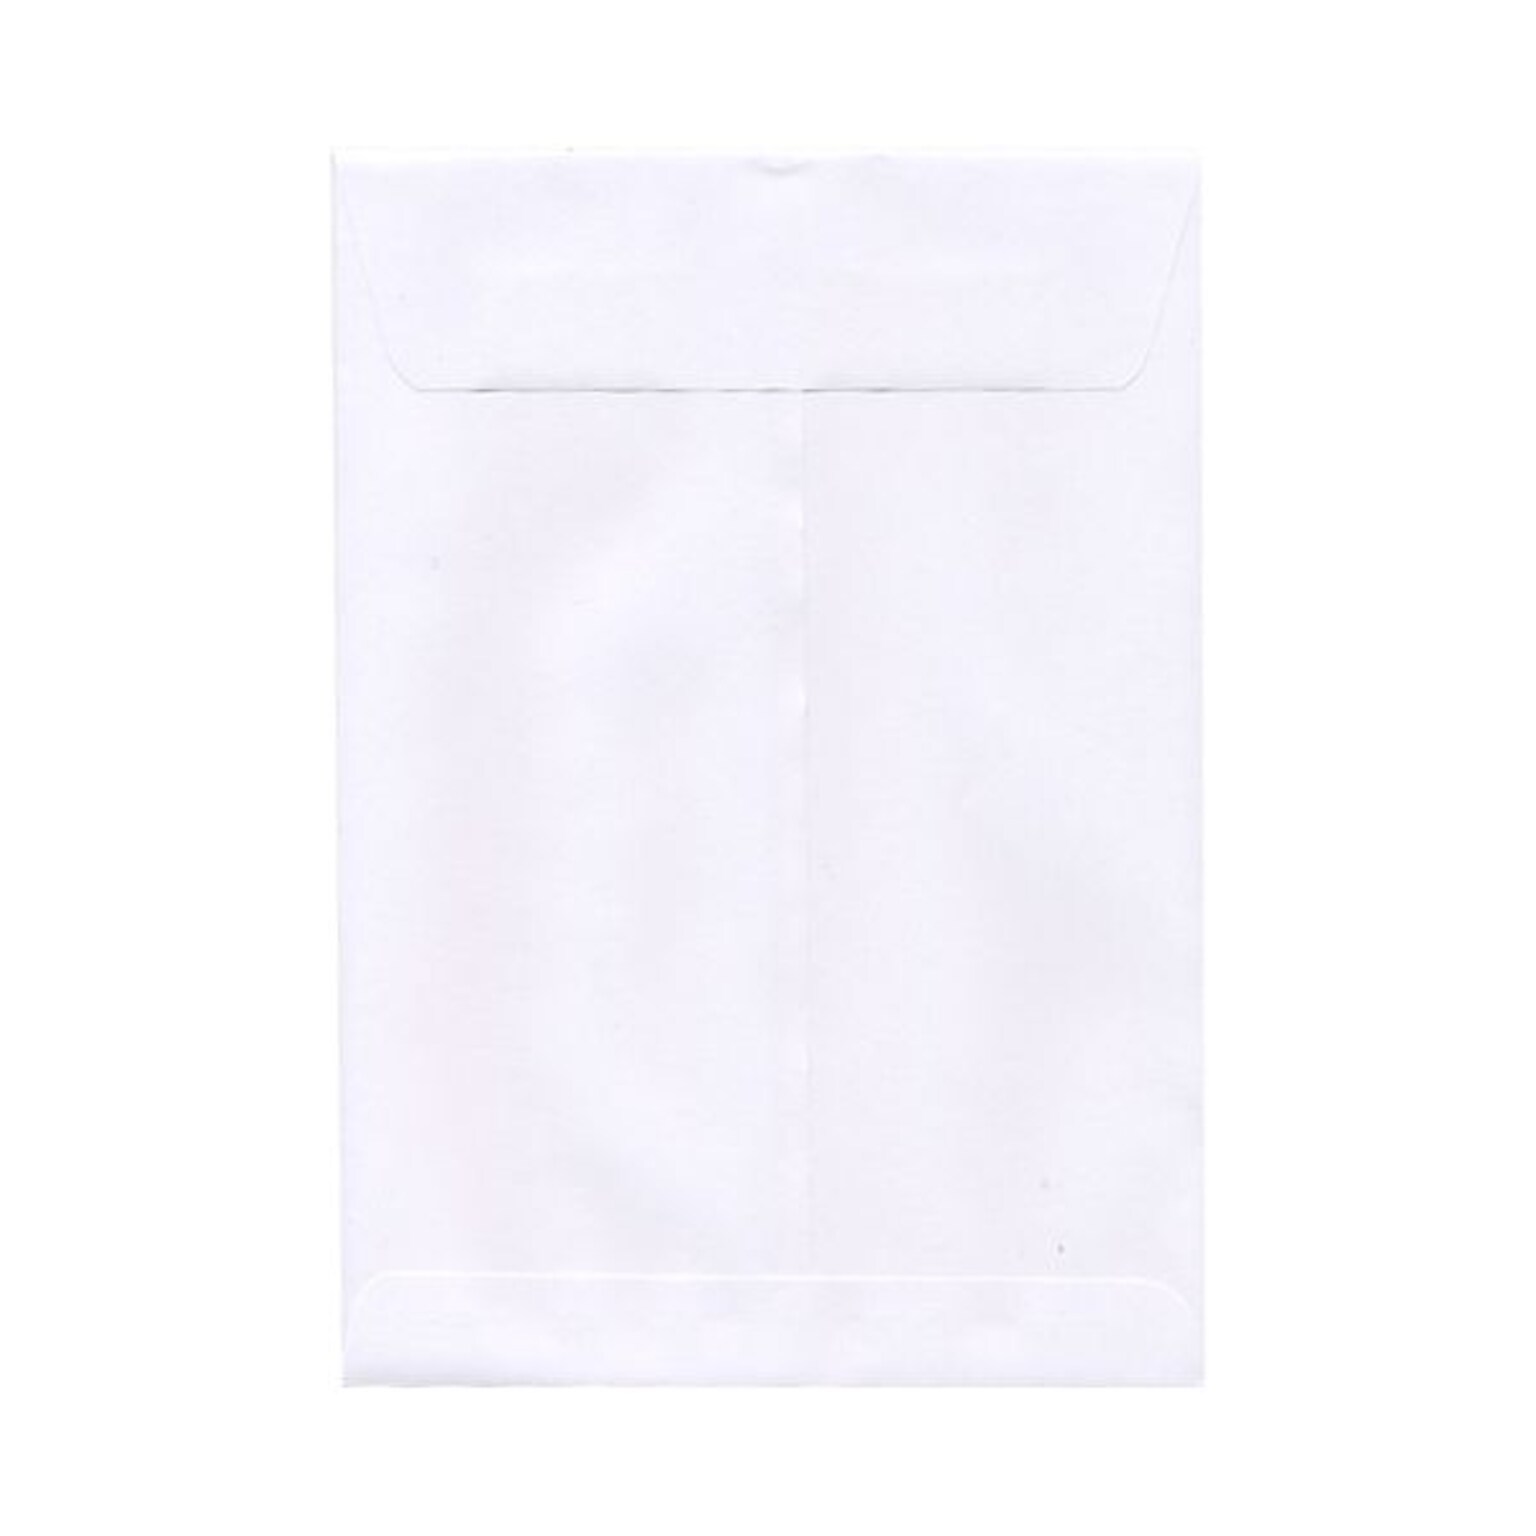 JAM Paper Open End Catalog Envelope, 9 x 12, White, 25/Pack (1623197)